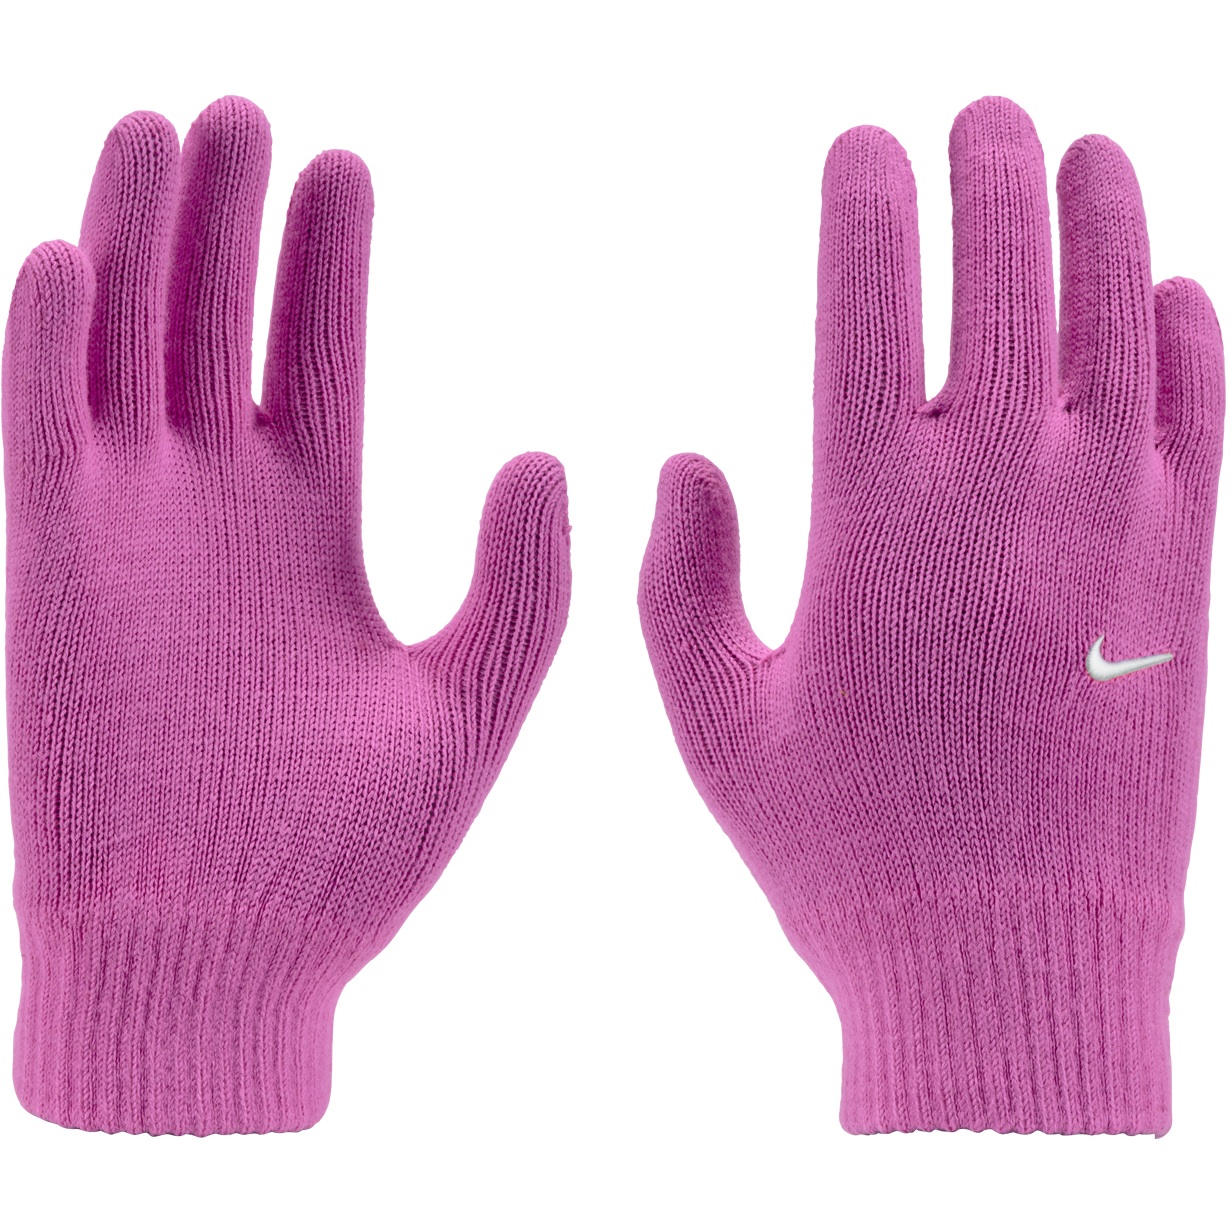 Produktbild von Nike Knit Swoosh Jugendliche Trainingshandschuhe 2.0 - playful pink/white 627